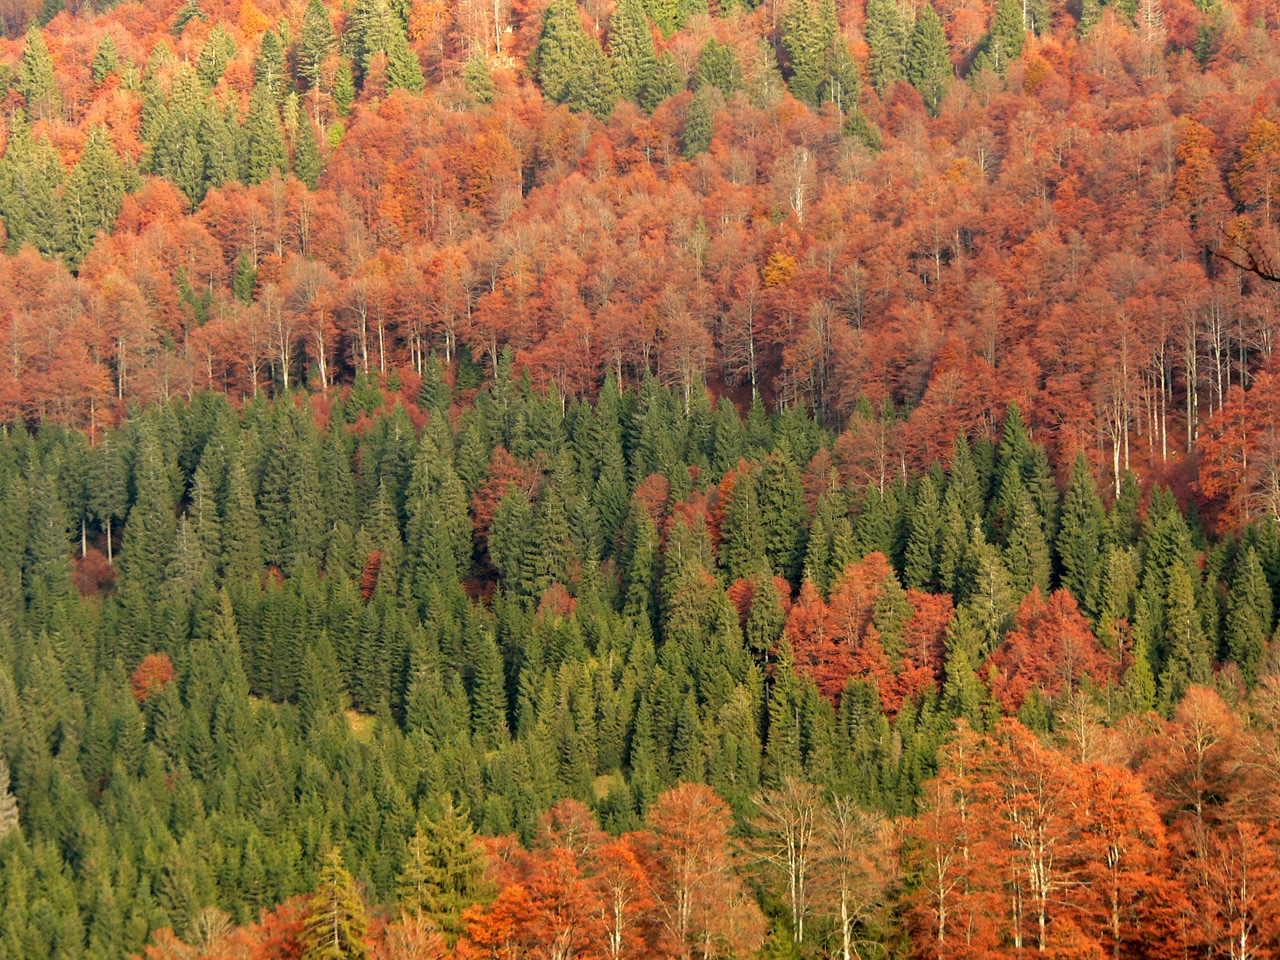 Blandet skog består av trær og bartrær